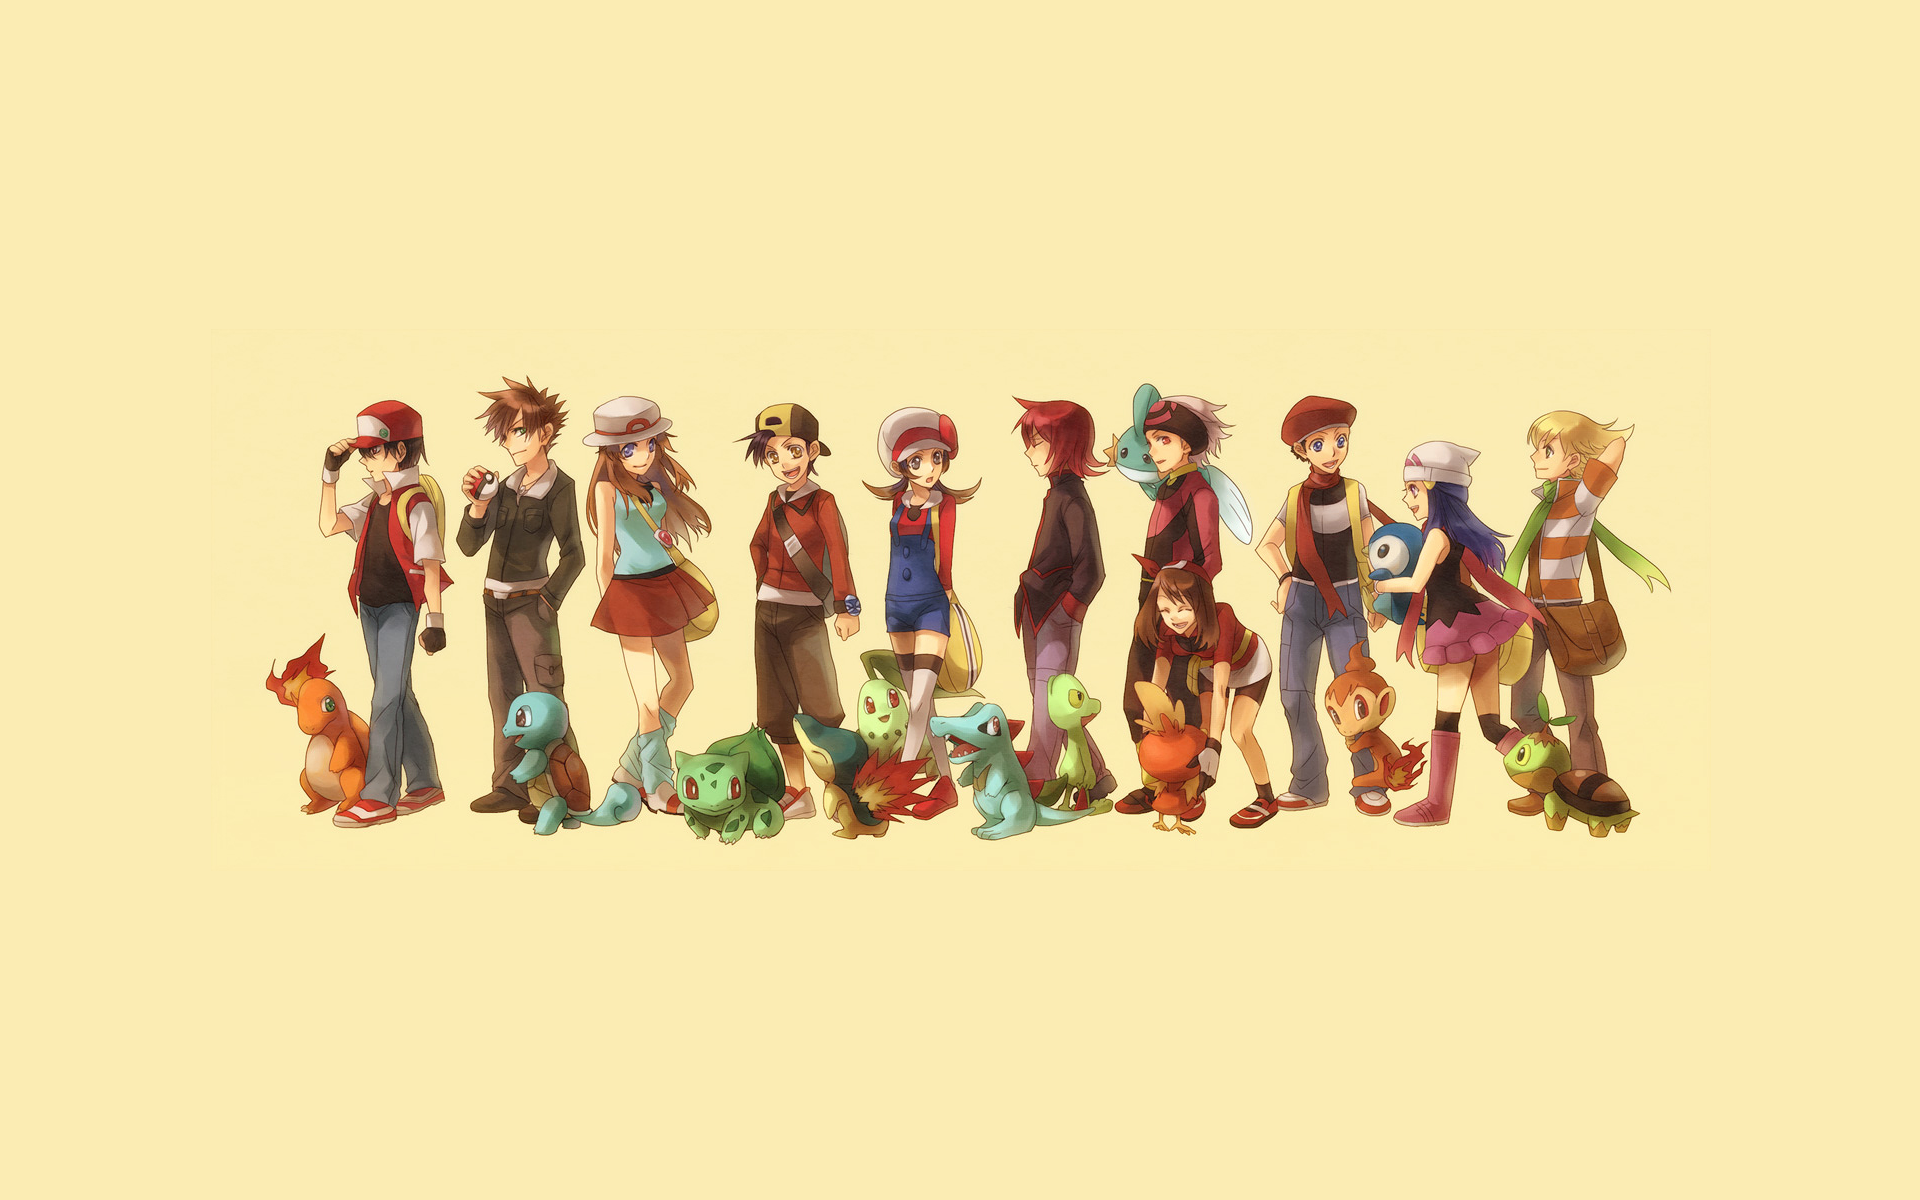 Pokemon Trainer Wallpaper